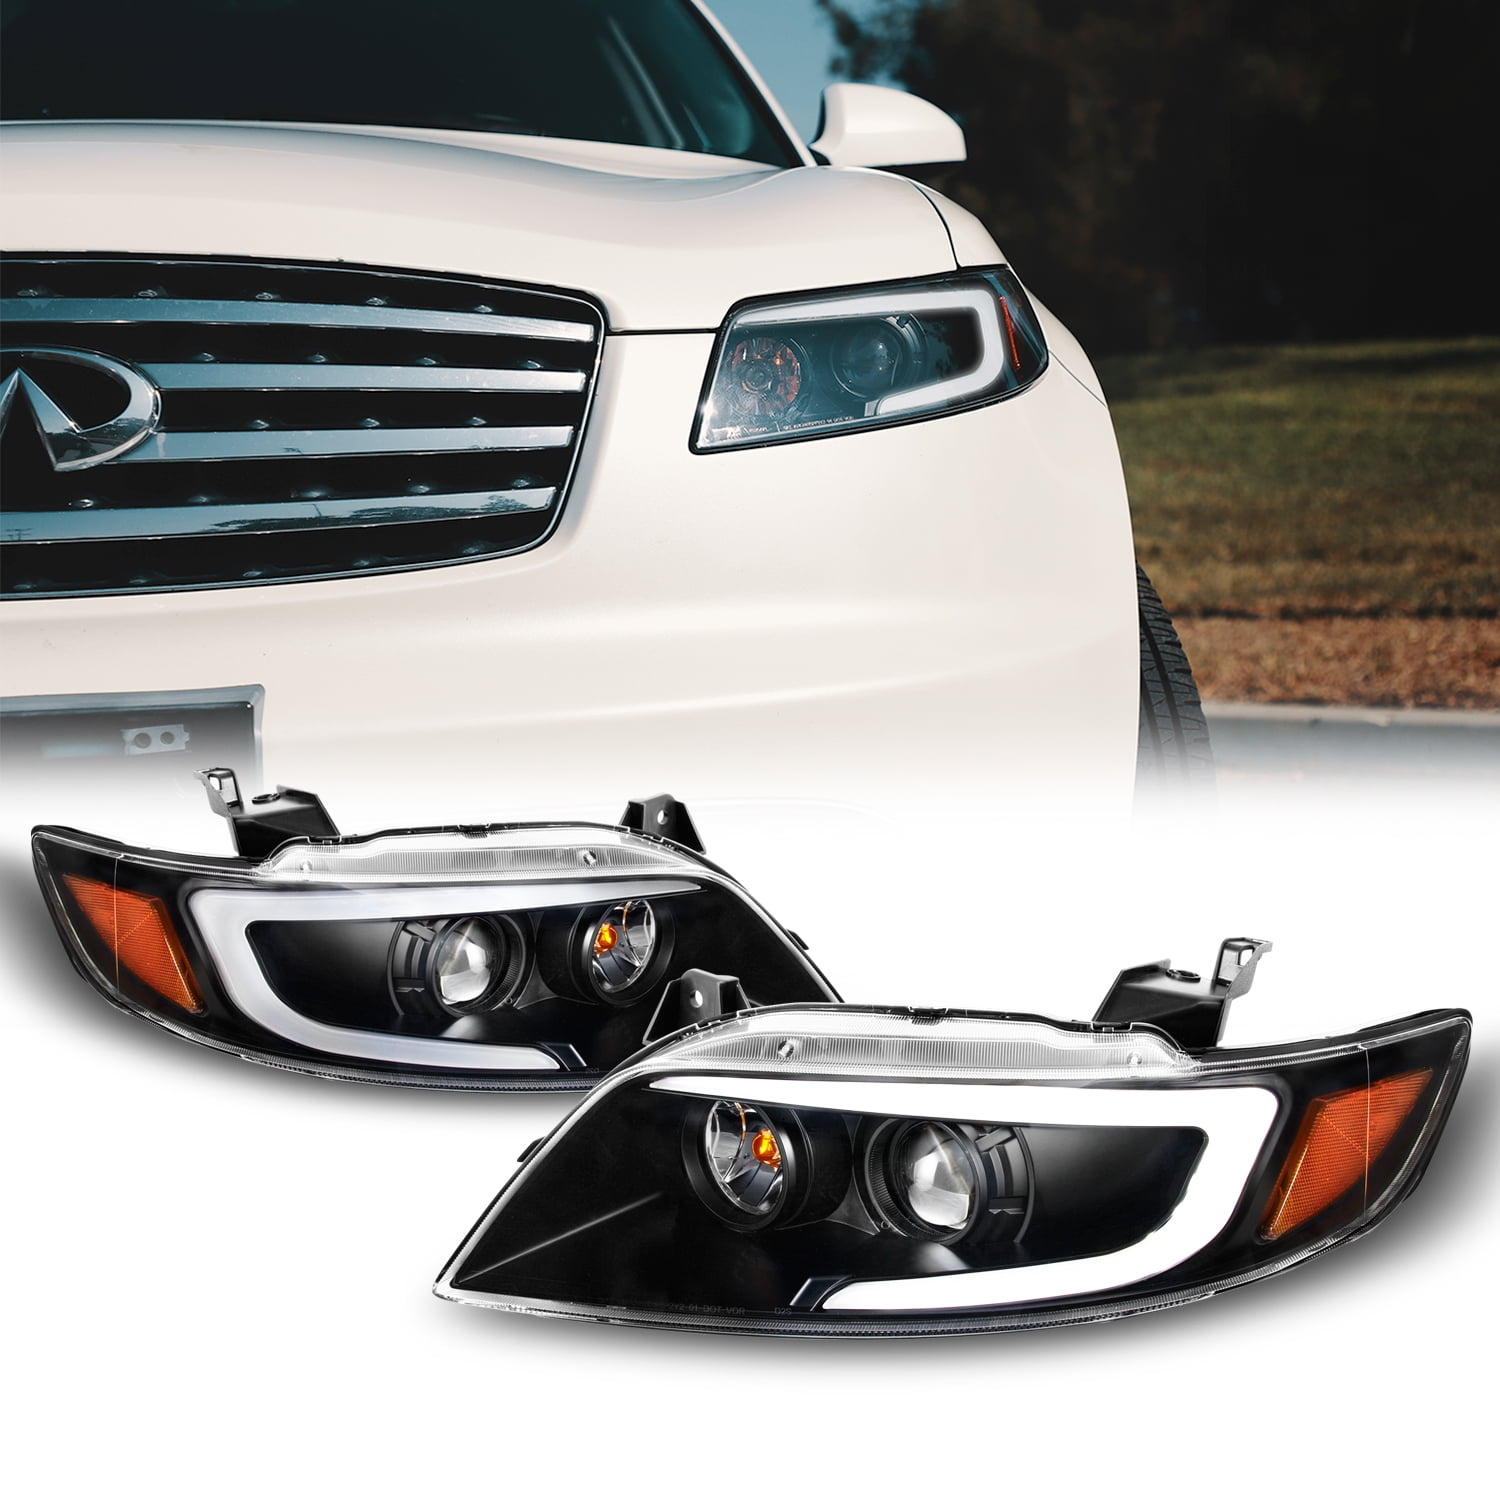 VW Golf Mk3 Hella Sticker Covers Headlights TYC Projektors / 2pcs